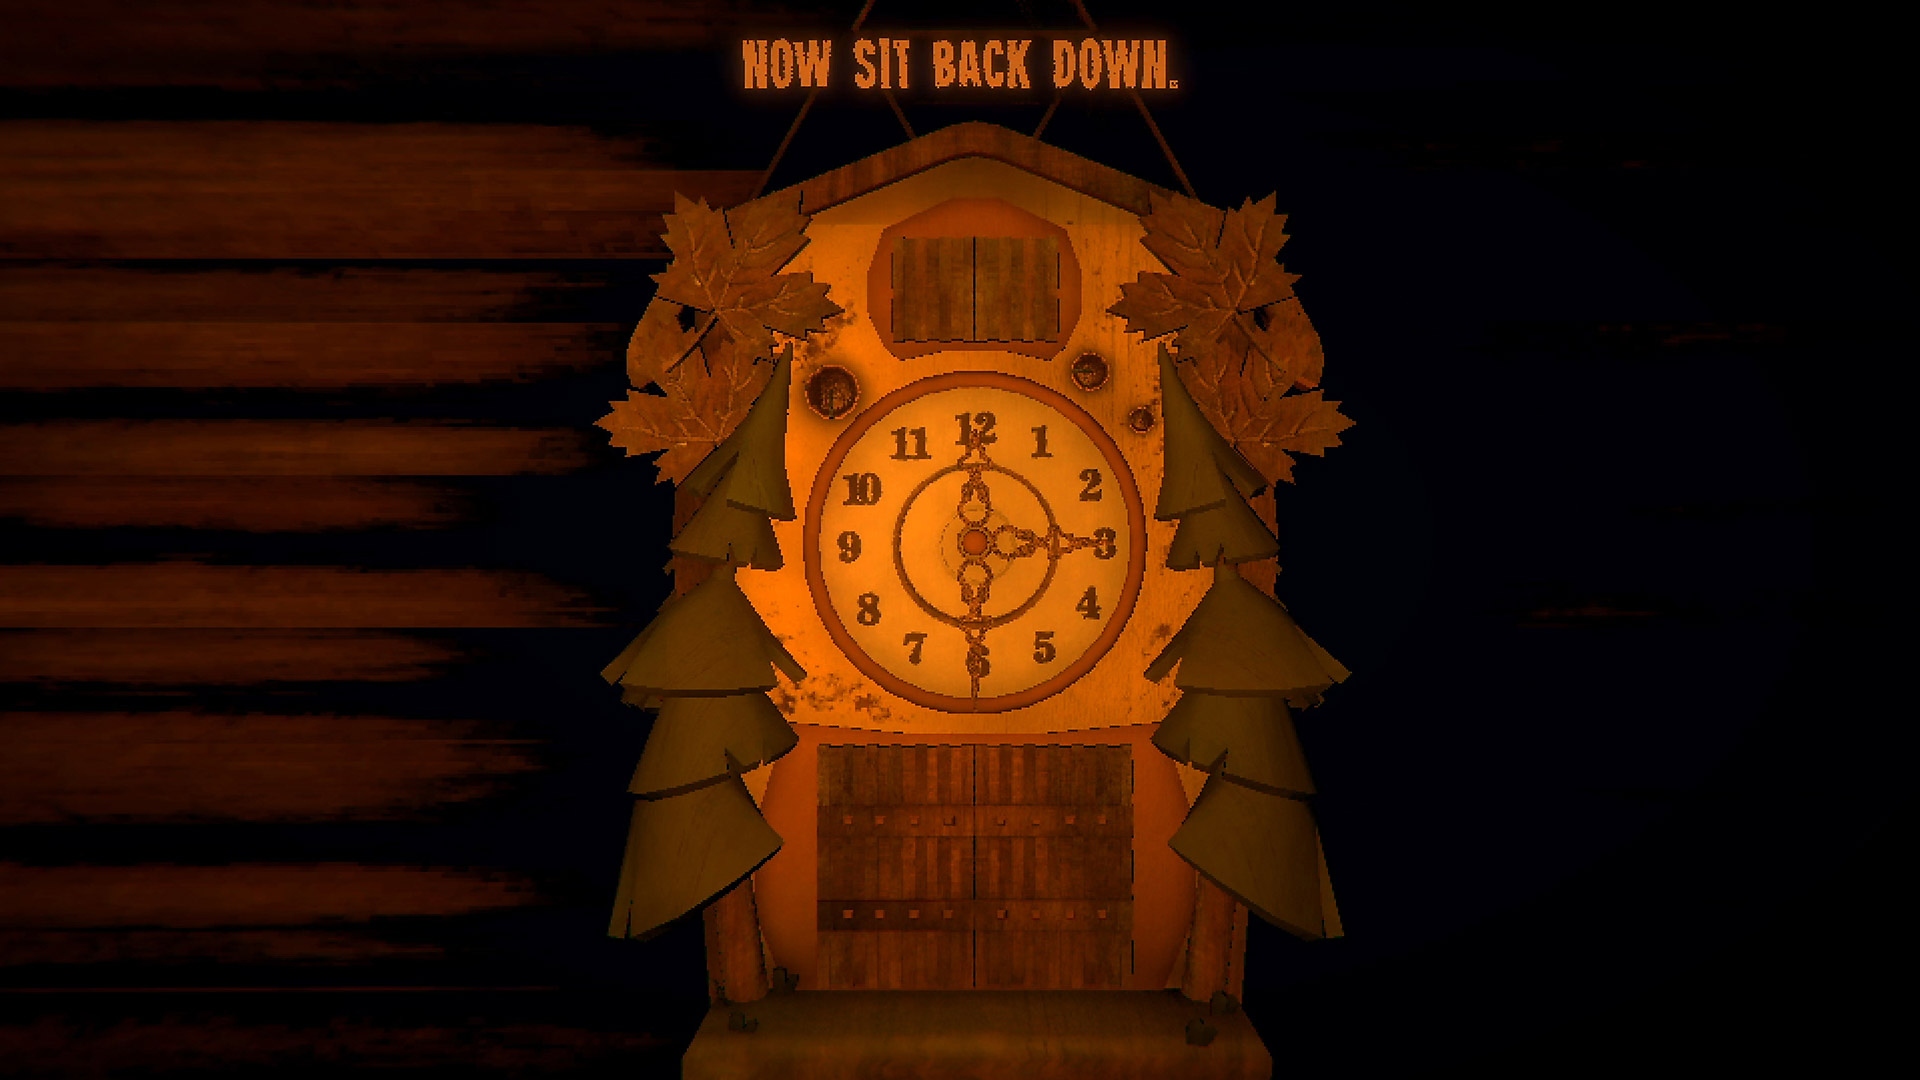 Istantanea della schermata di gioco di Inscryption che mostra un orologio a cucù con tre lancette.